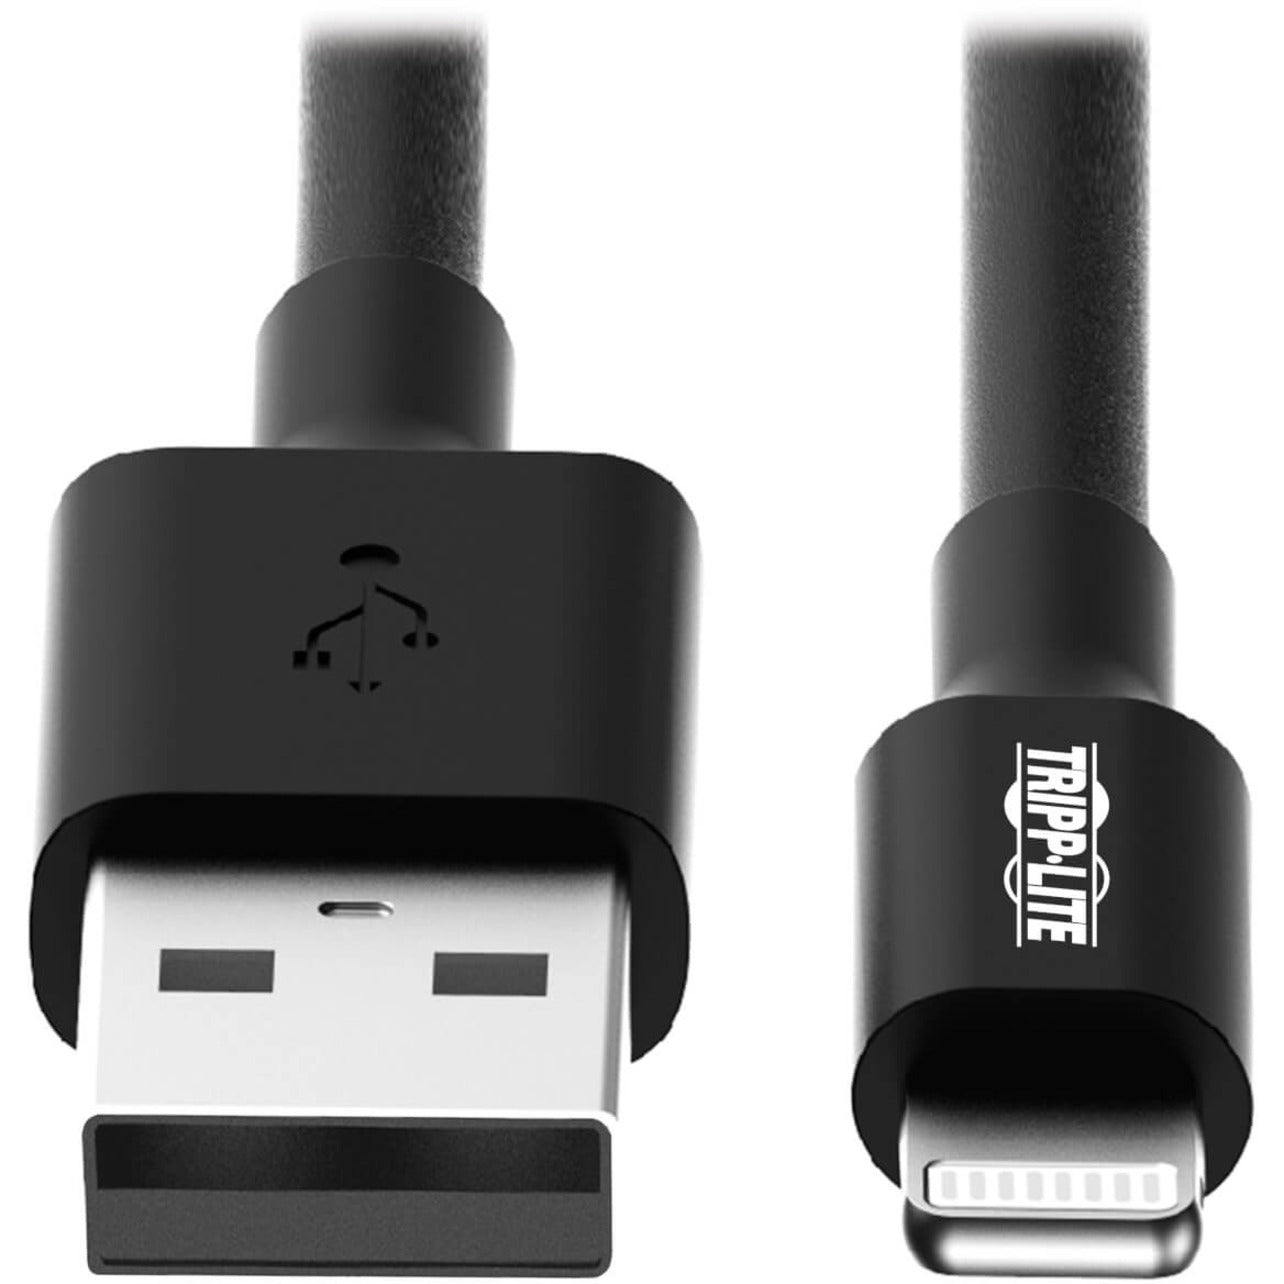 تريب لايت كبل شحن / مزامنة USB أسود بطول 6 أقدام (1.8 متر) مع منفذ Lightning ، متوافق مع iPhone و iPad و iPod ، معتمد من MFI